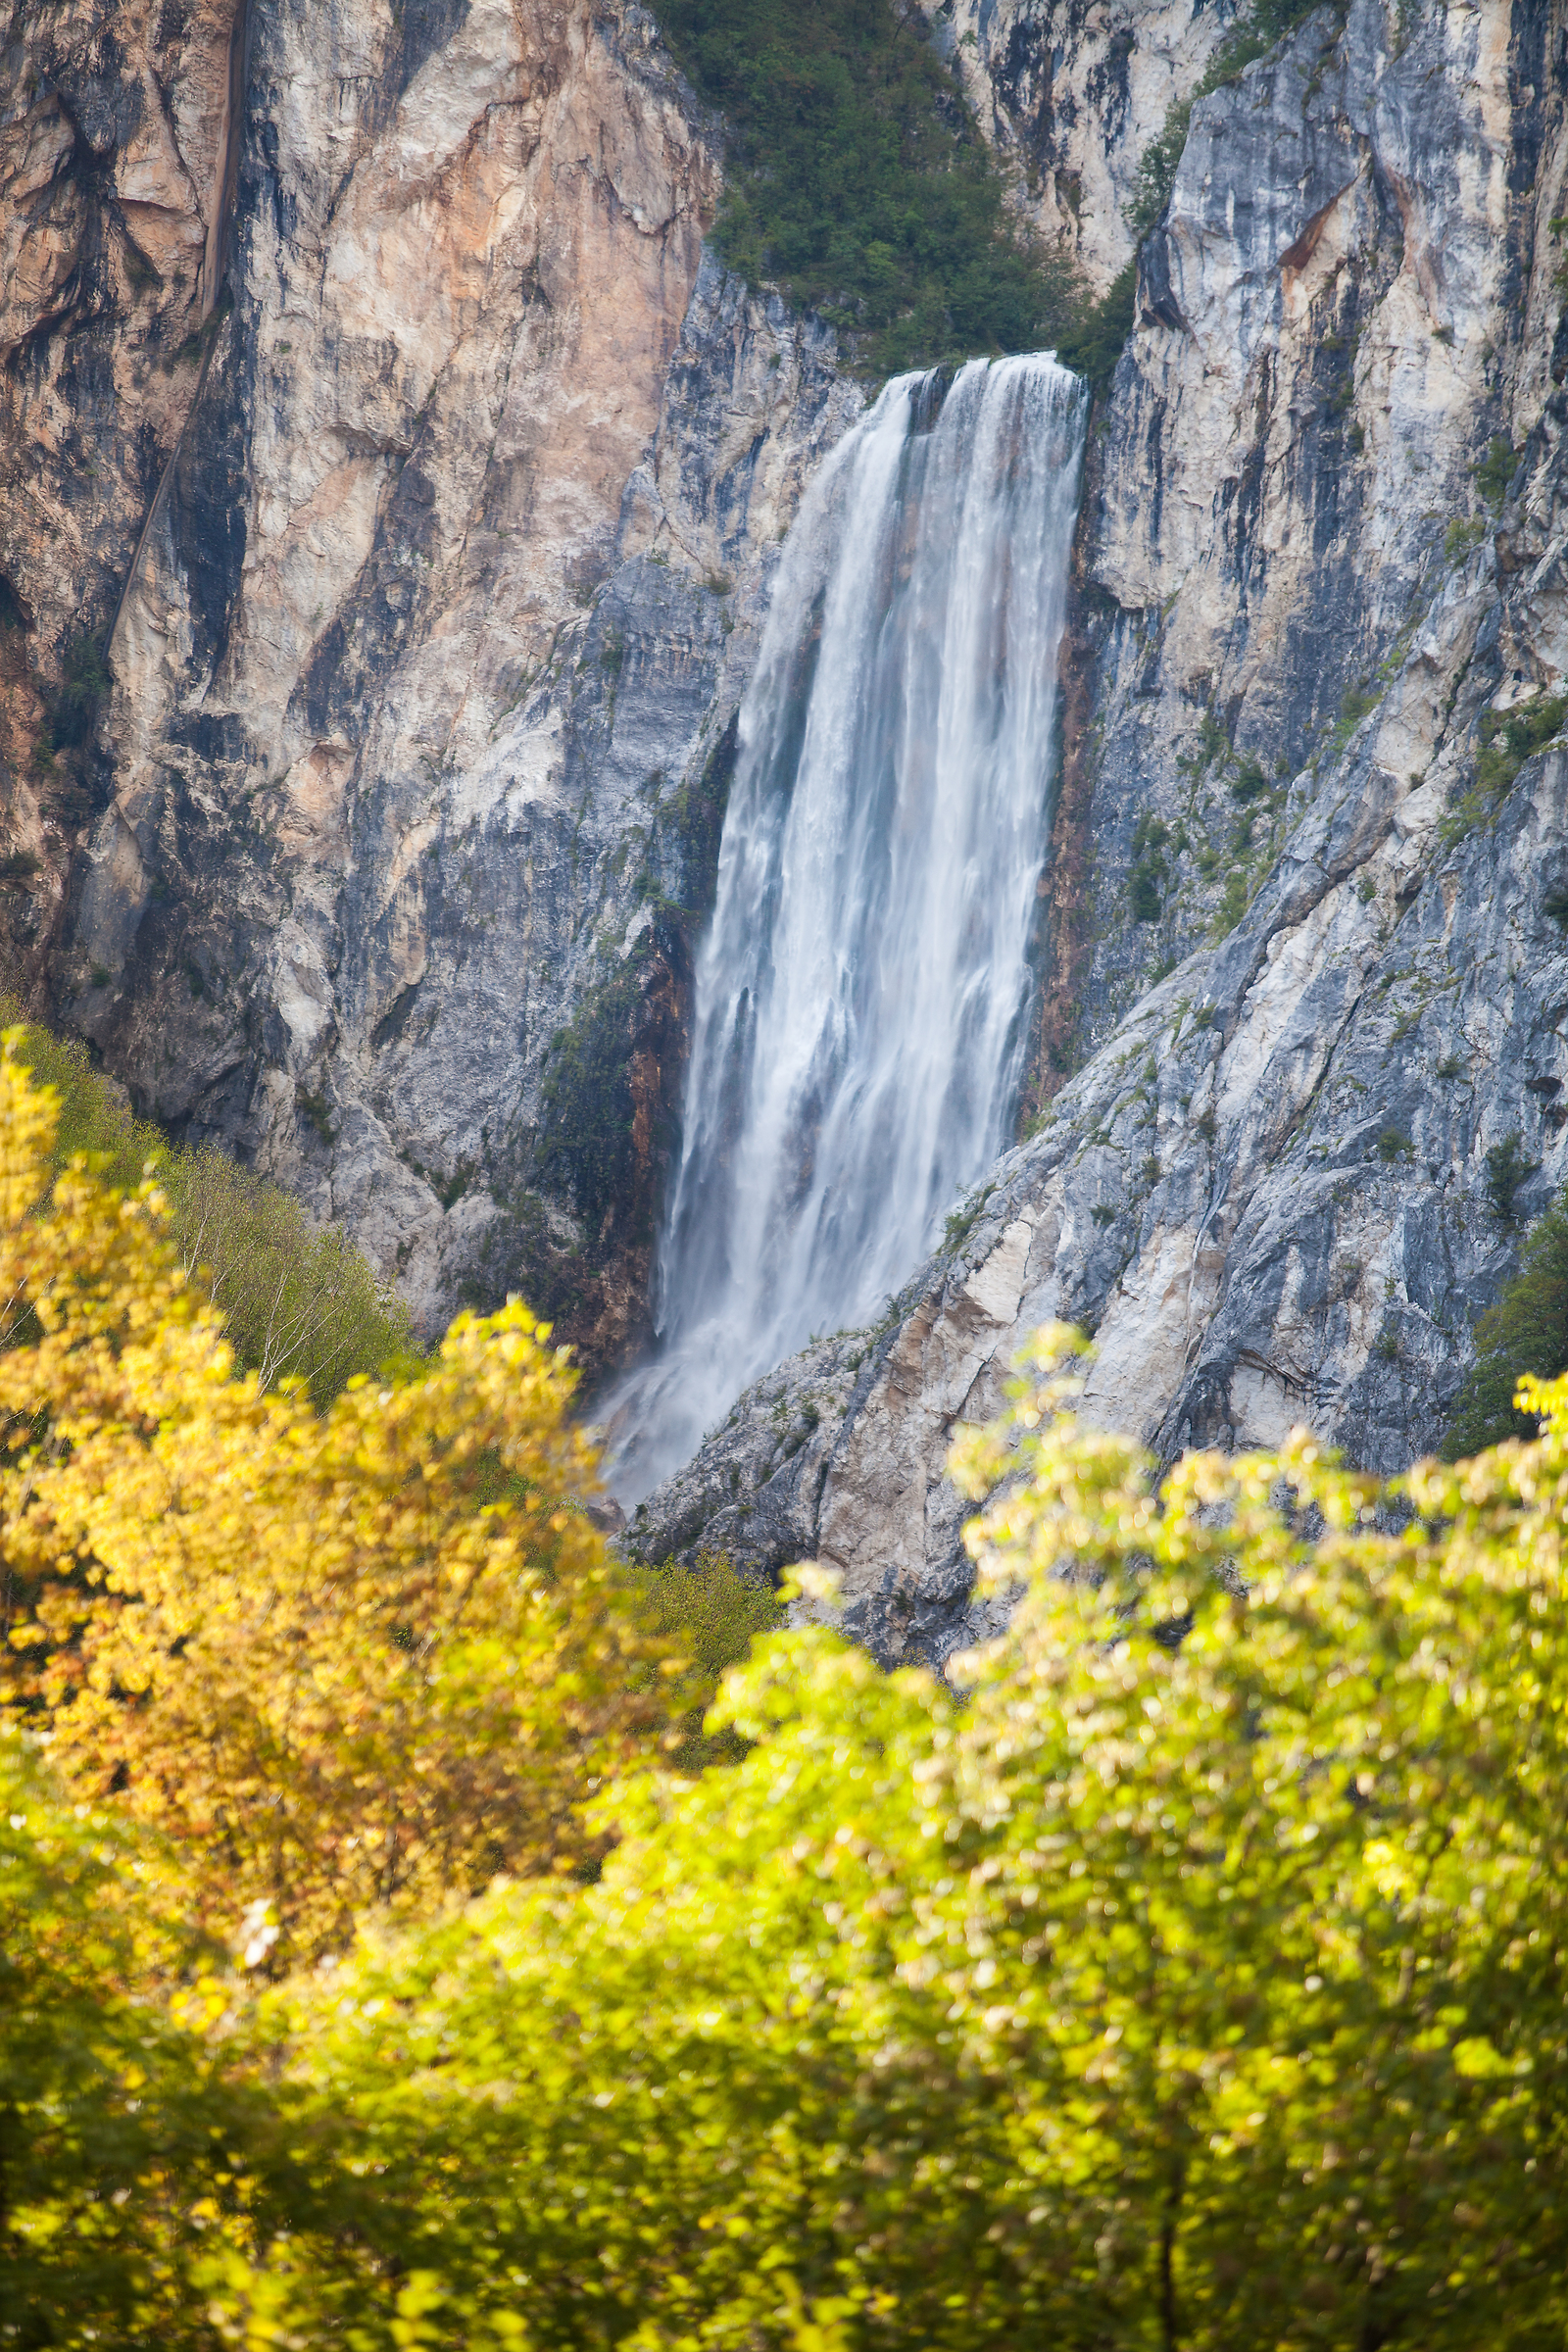 Cascata di Boka, il salto d'acqua più potente della Slovenia